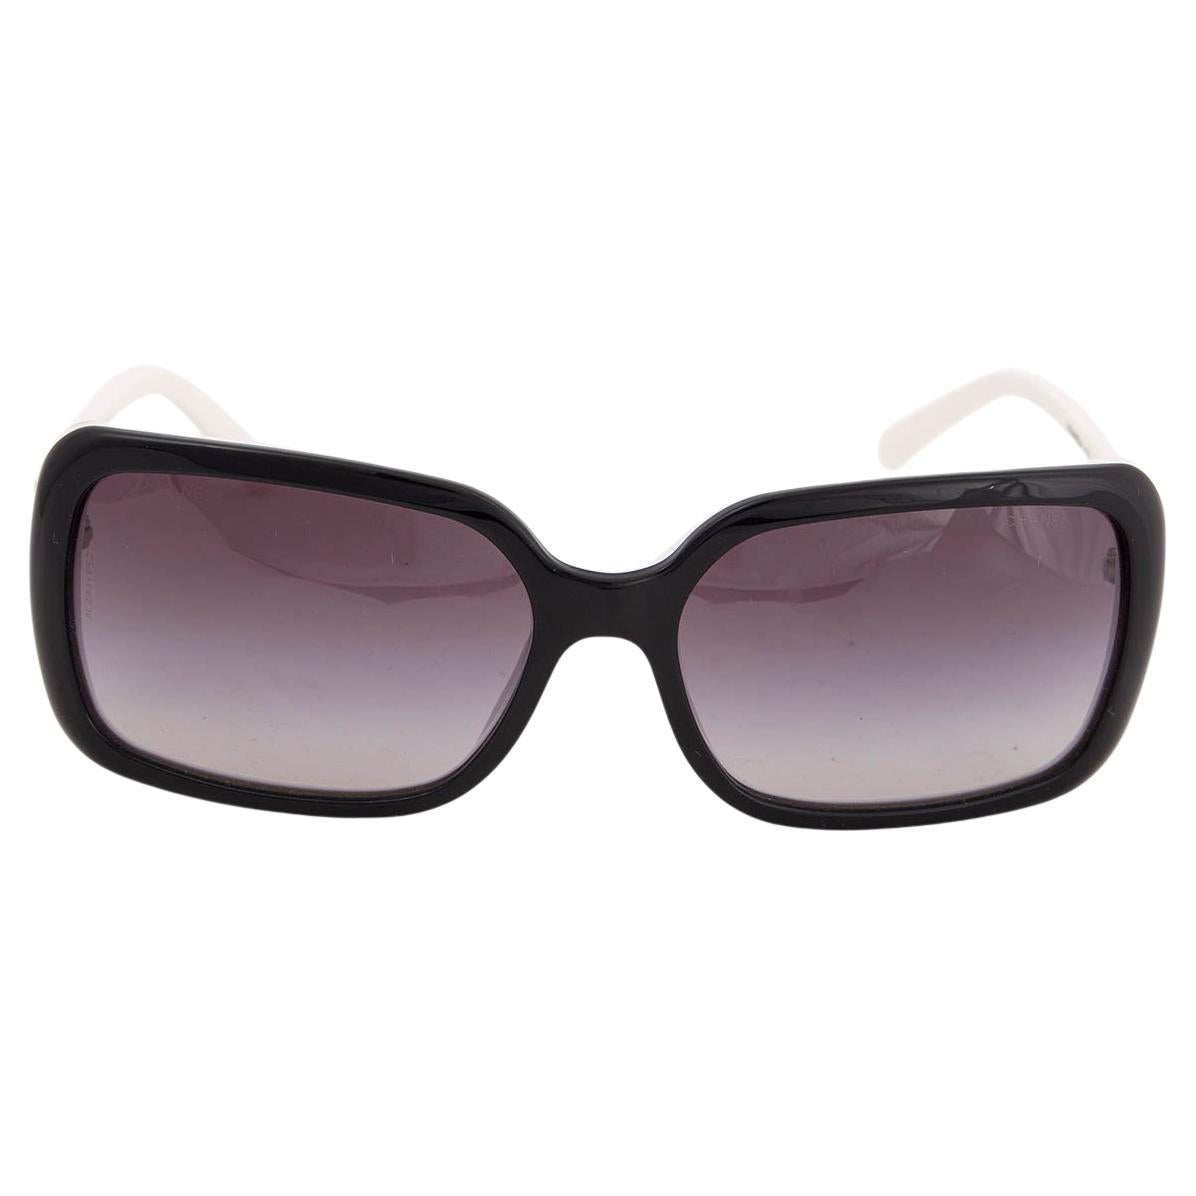 Chanel Black & White Logo 5175 Sunglasses